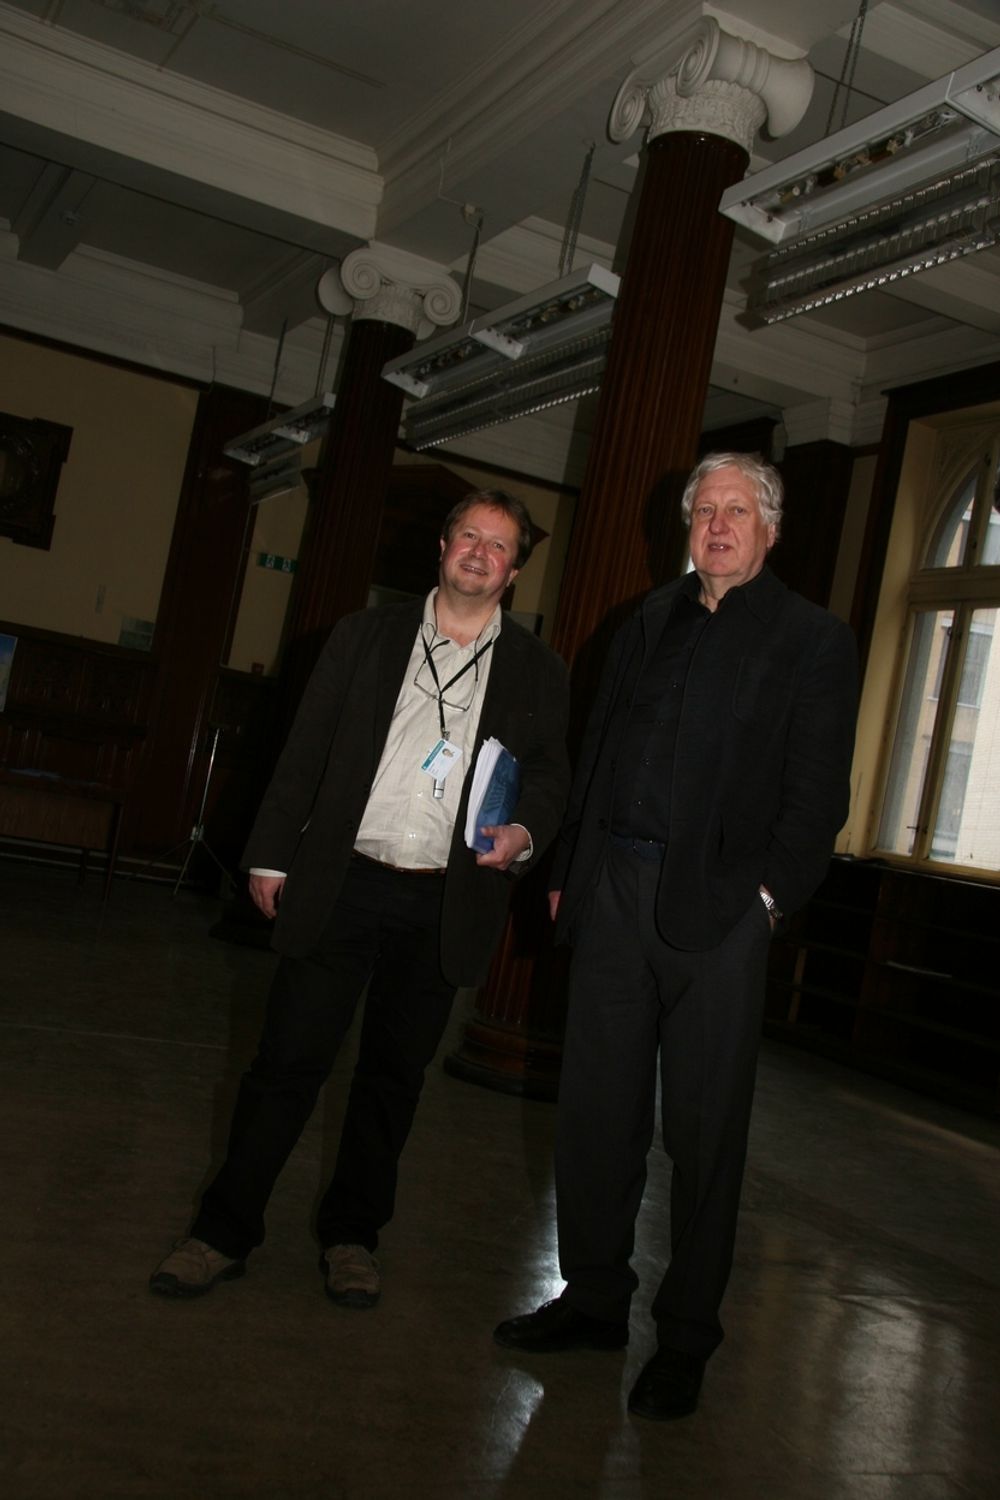 KJEMPEJOBB: Festsalen i det som engang var Statens enkekasse skal restaureres til originalstand. Det blir en utfordring for både prosjektleder Jens-Petter Lund (til venstre) og arkitekt Knut Pedersen.